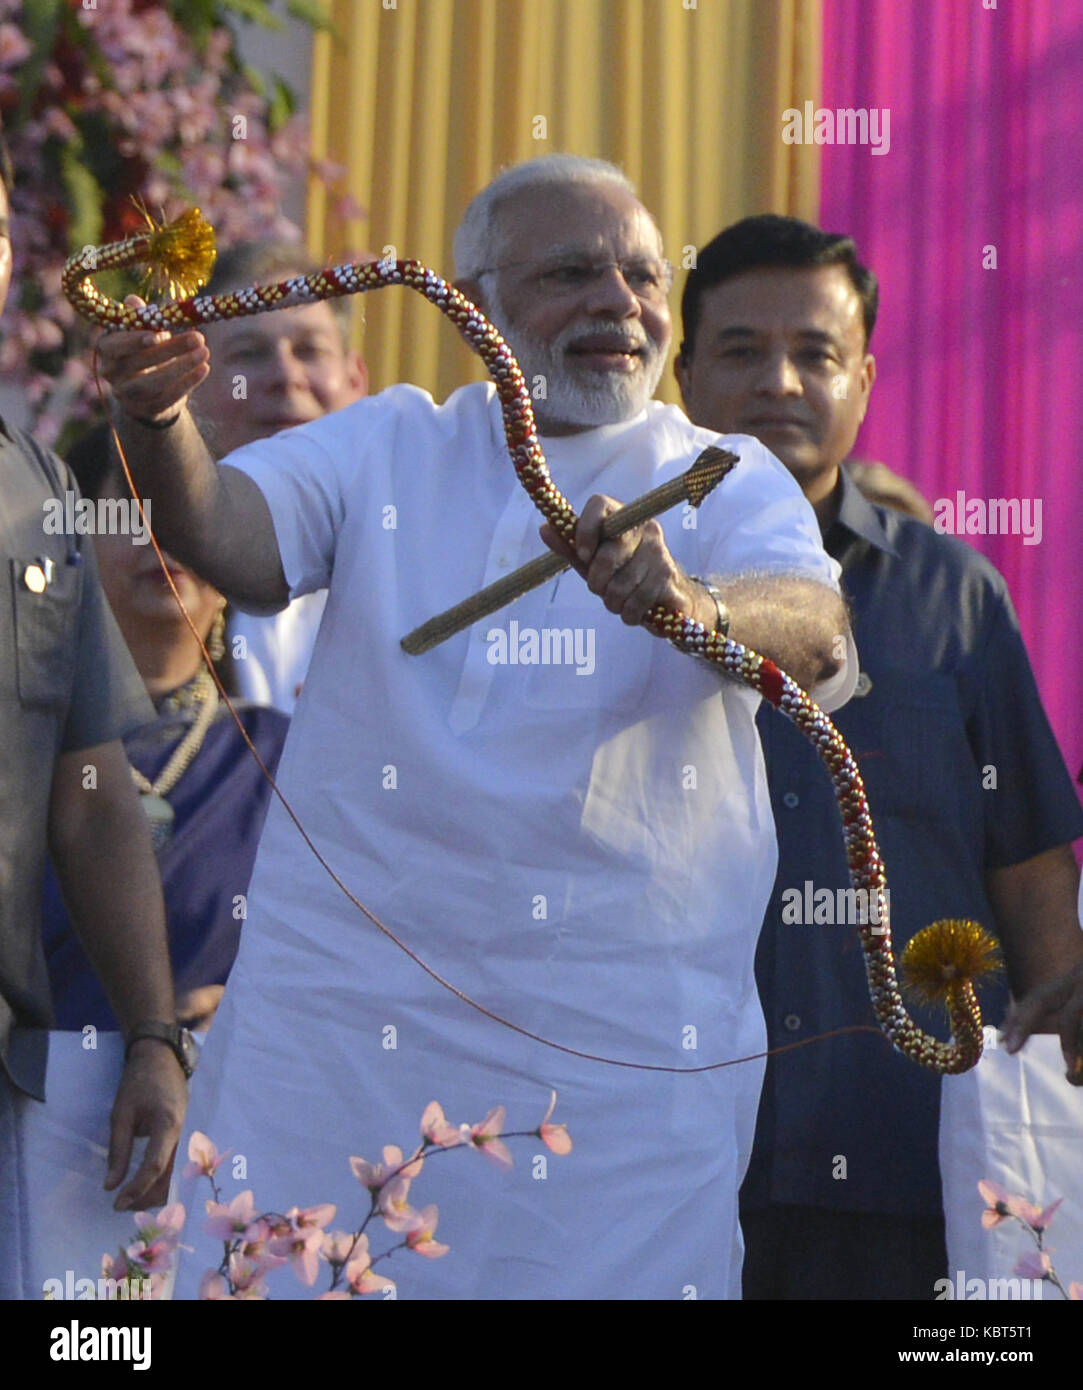 (171001) - NEW DELHI, Oktober 1, 2017 (Xinhua) - indische Ministerpräsident Narendra Modi versucht, seine Hände auf einen Pfeil und Bogen bei der Feier der Dussehra Festival am Exerzierplatz, in Neu Delhi, Indien, Sept. 30, 2017. Dussehra ist eine große hinduistische Fest, die am Ende von navratri jedes Jahr gefeiert wird, erinnern von Lord Rama Sieg über Ravana, den 10-köpfigen Dämon König. (Xinhua/Stringer) (zjl) Stockfoto